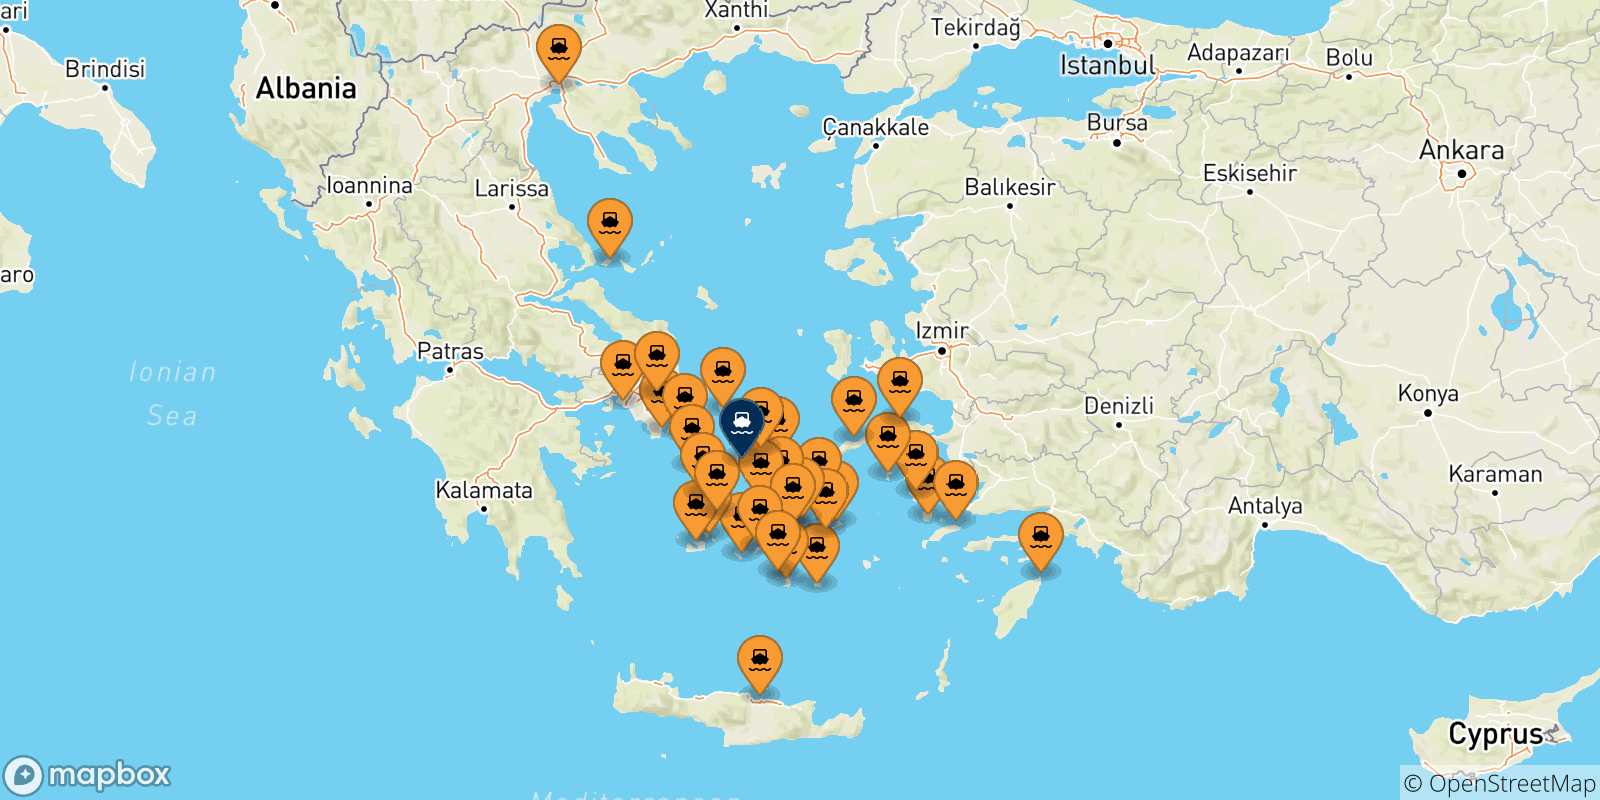 Mappa delle possibili rotte tra la Grecia e Syros